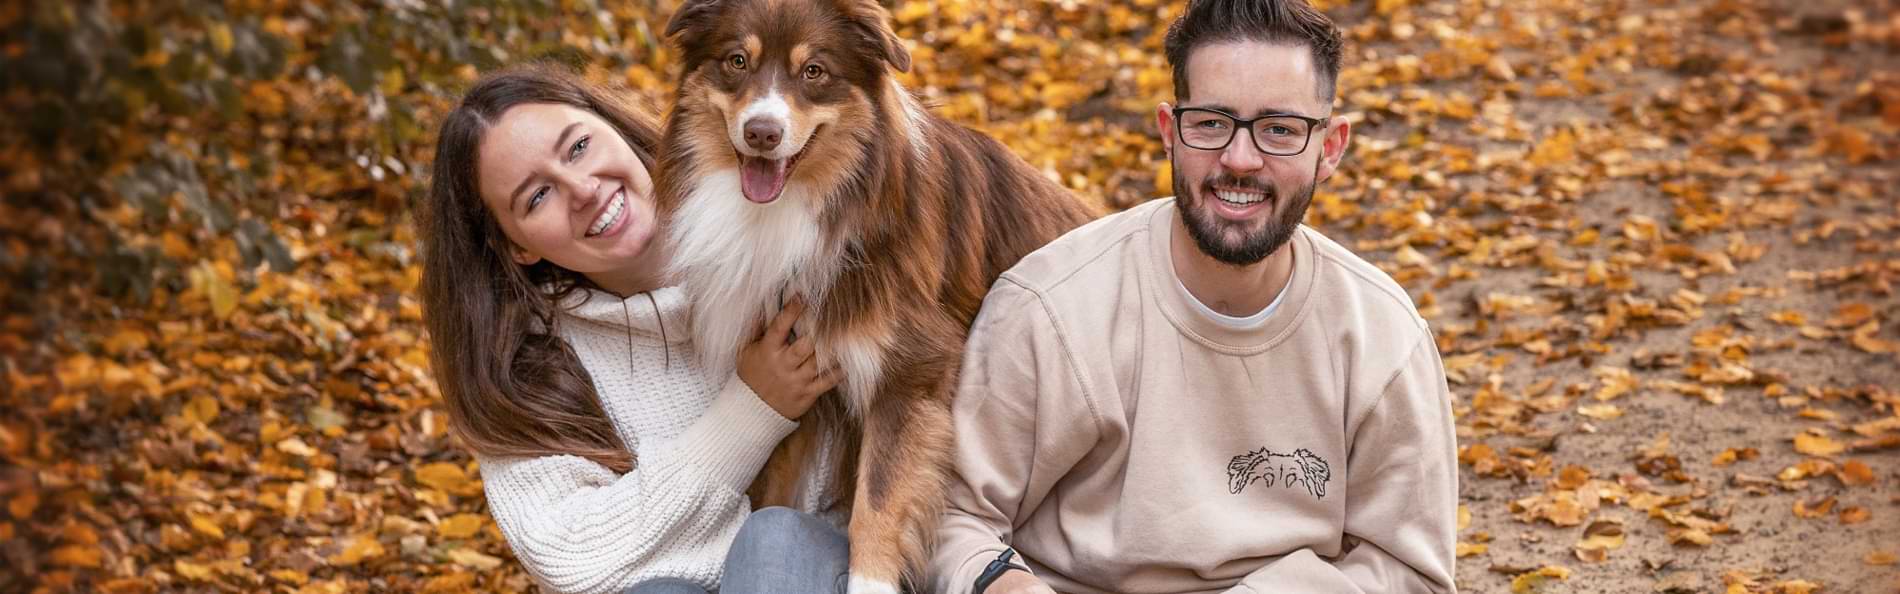 Eine junge Frau und ein junger Mann sitzen mit einem Hund auf Herbstlaub